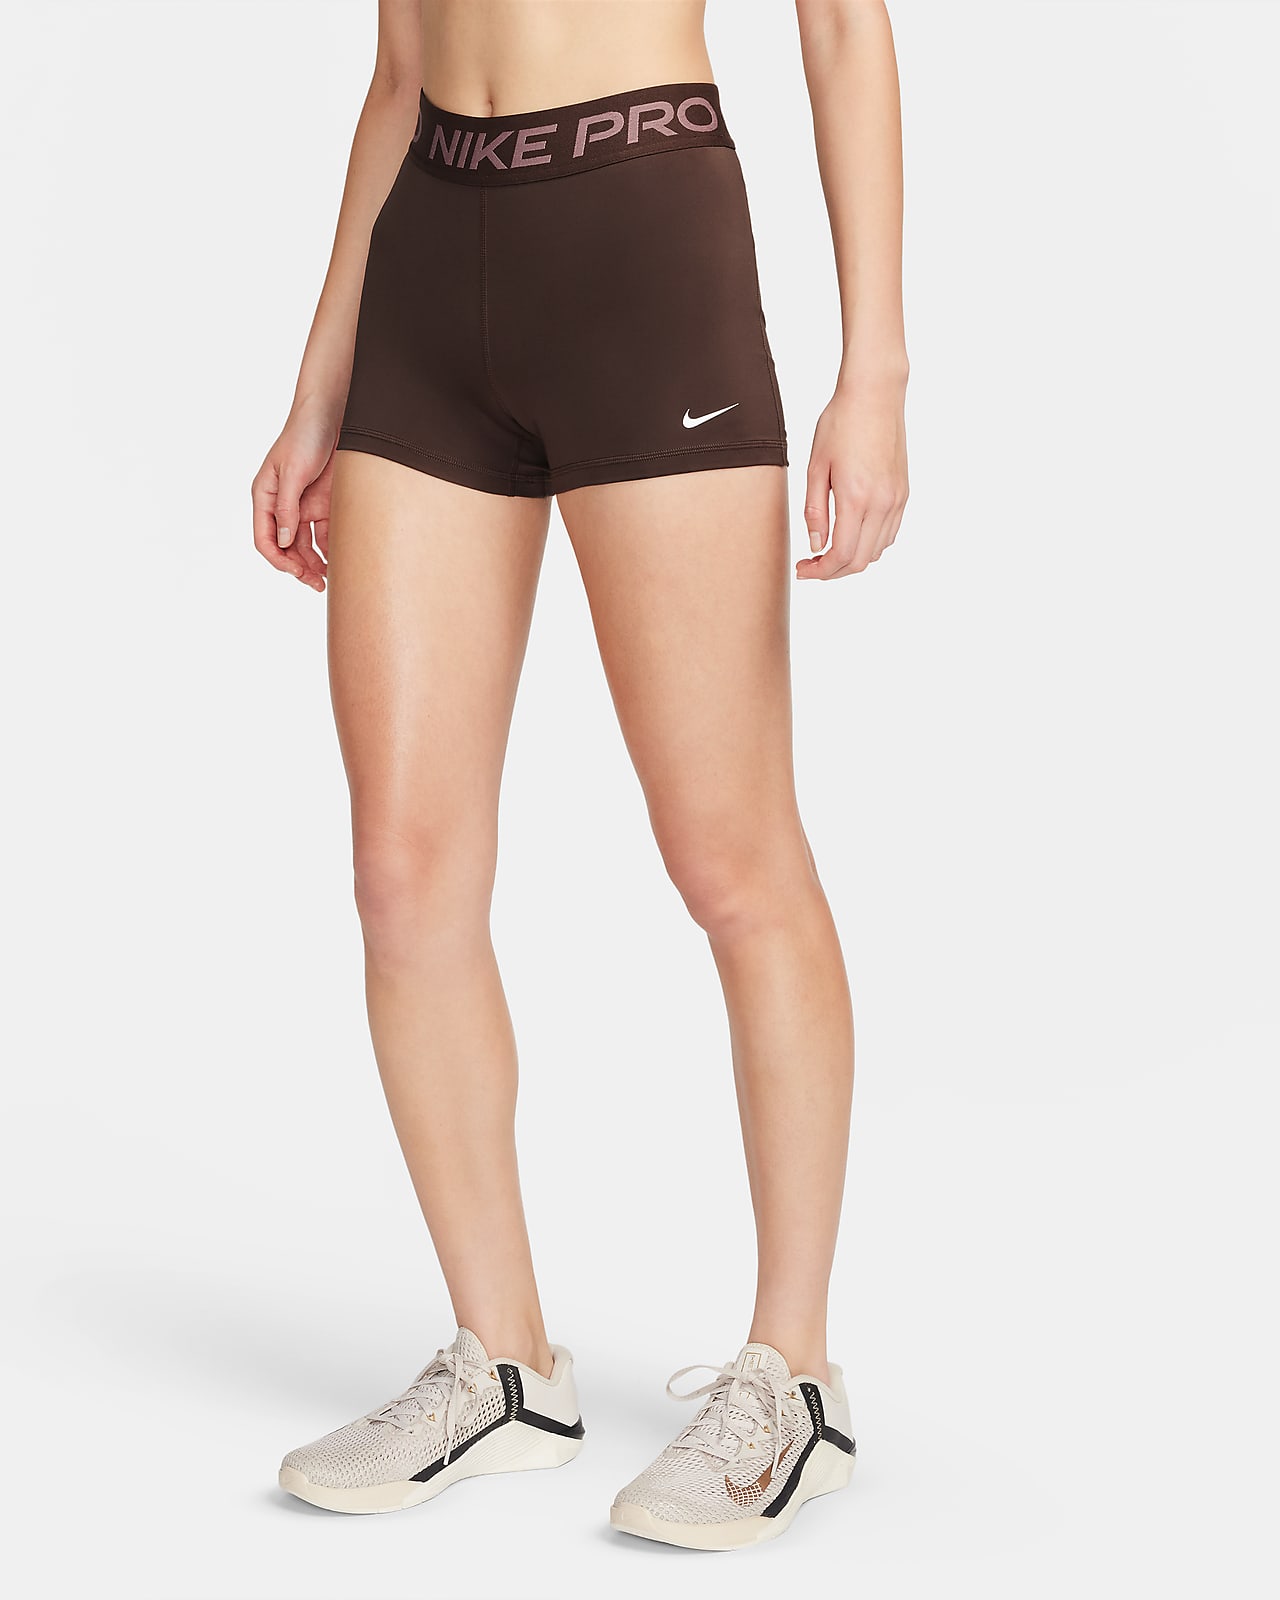 Nike Pro Women's 8cm (approx.) Shorts. Nike LU